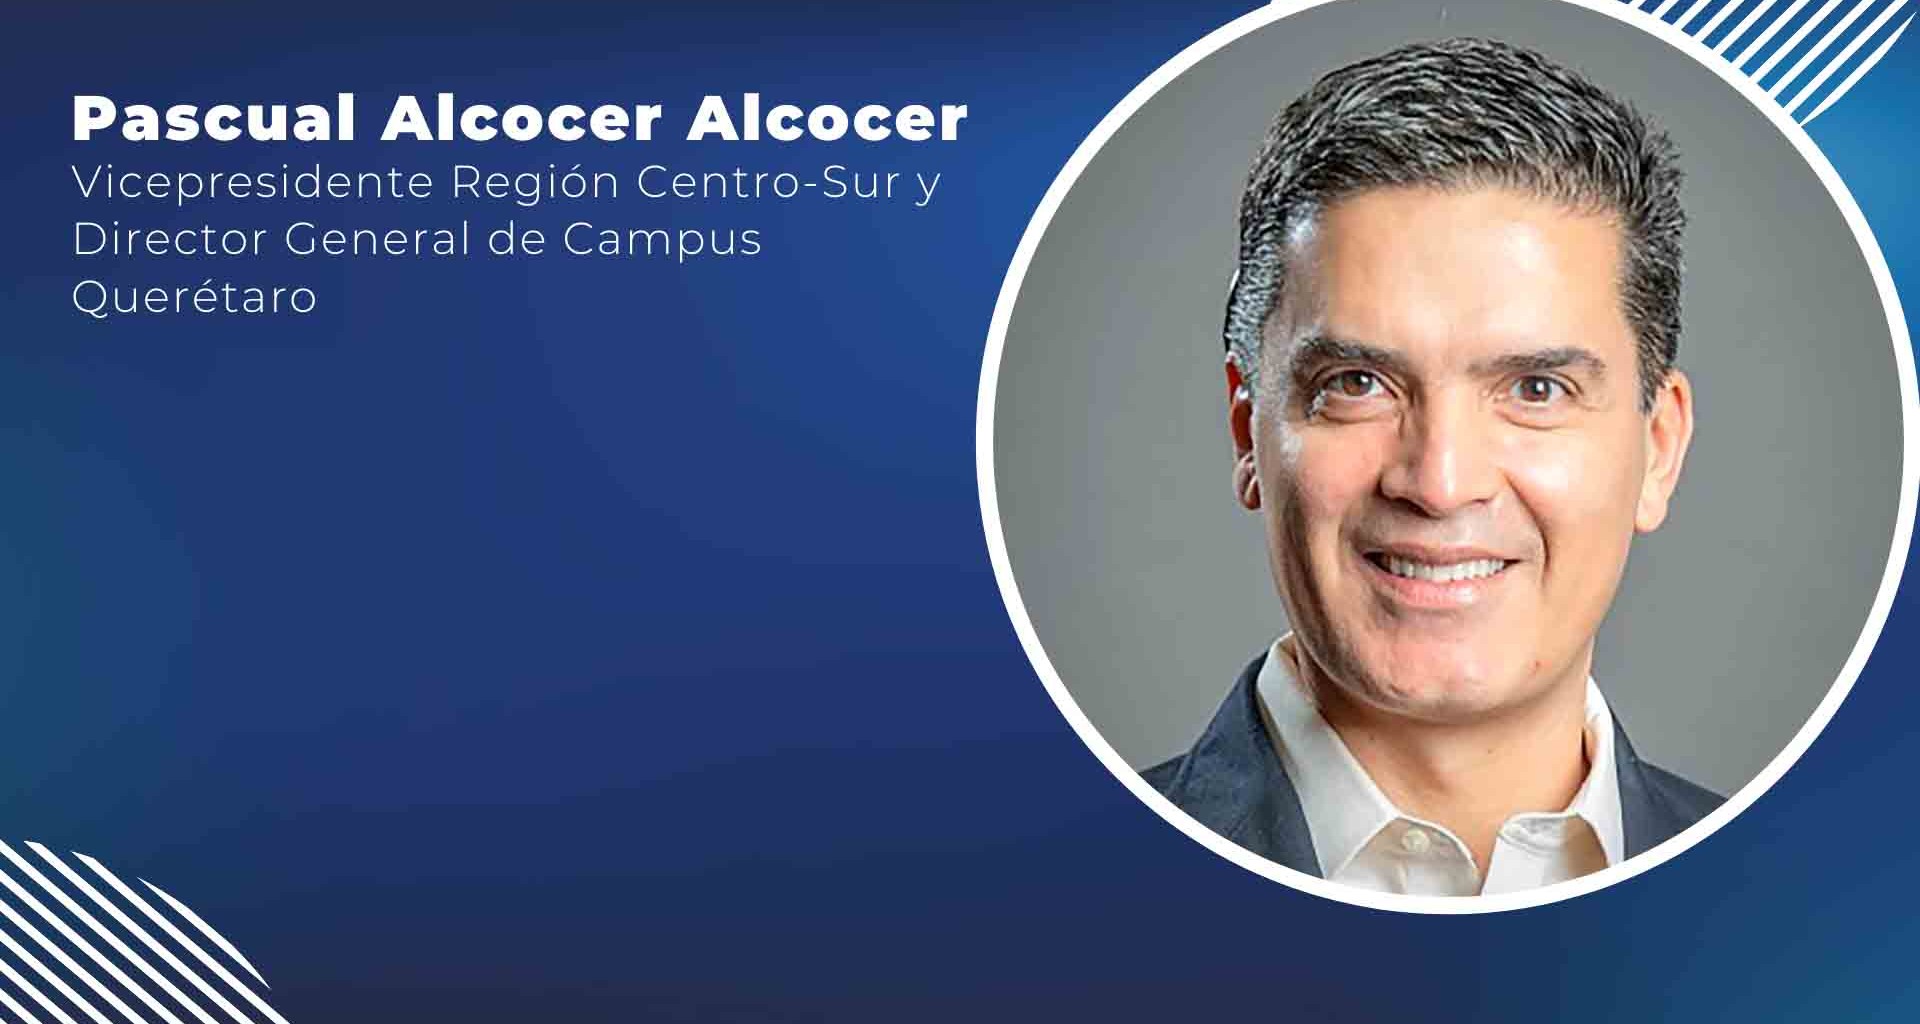 Pascual Alcocer Alcocer asume como Vicepresidente de la Región Centro-Sur y Director General de Campus Querétaro.